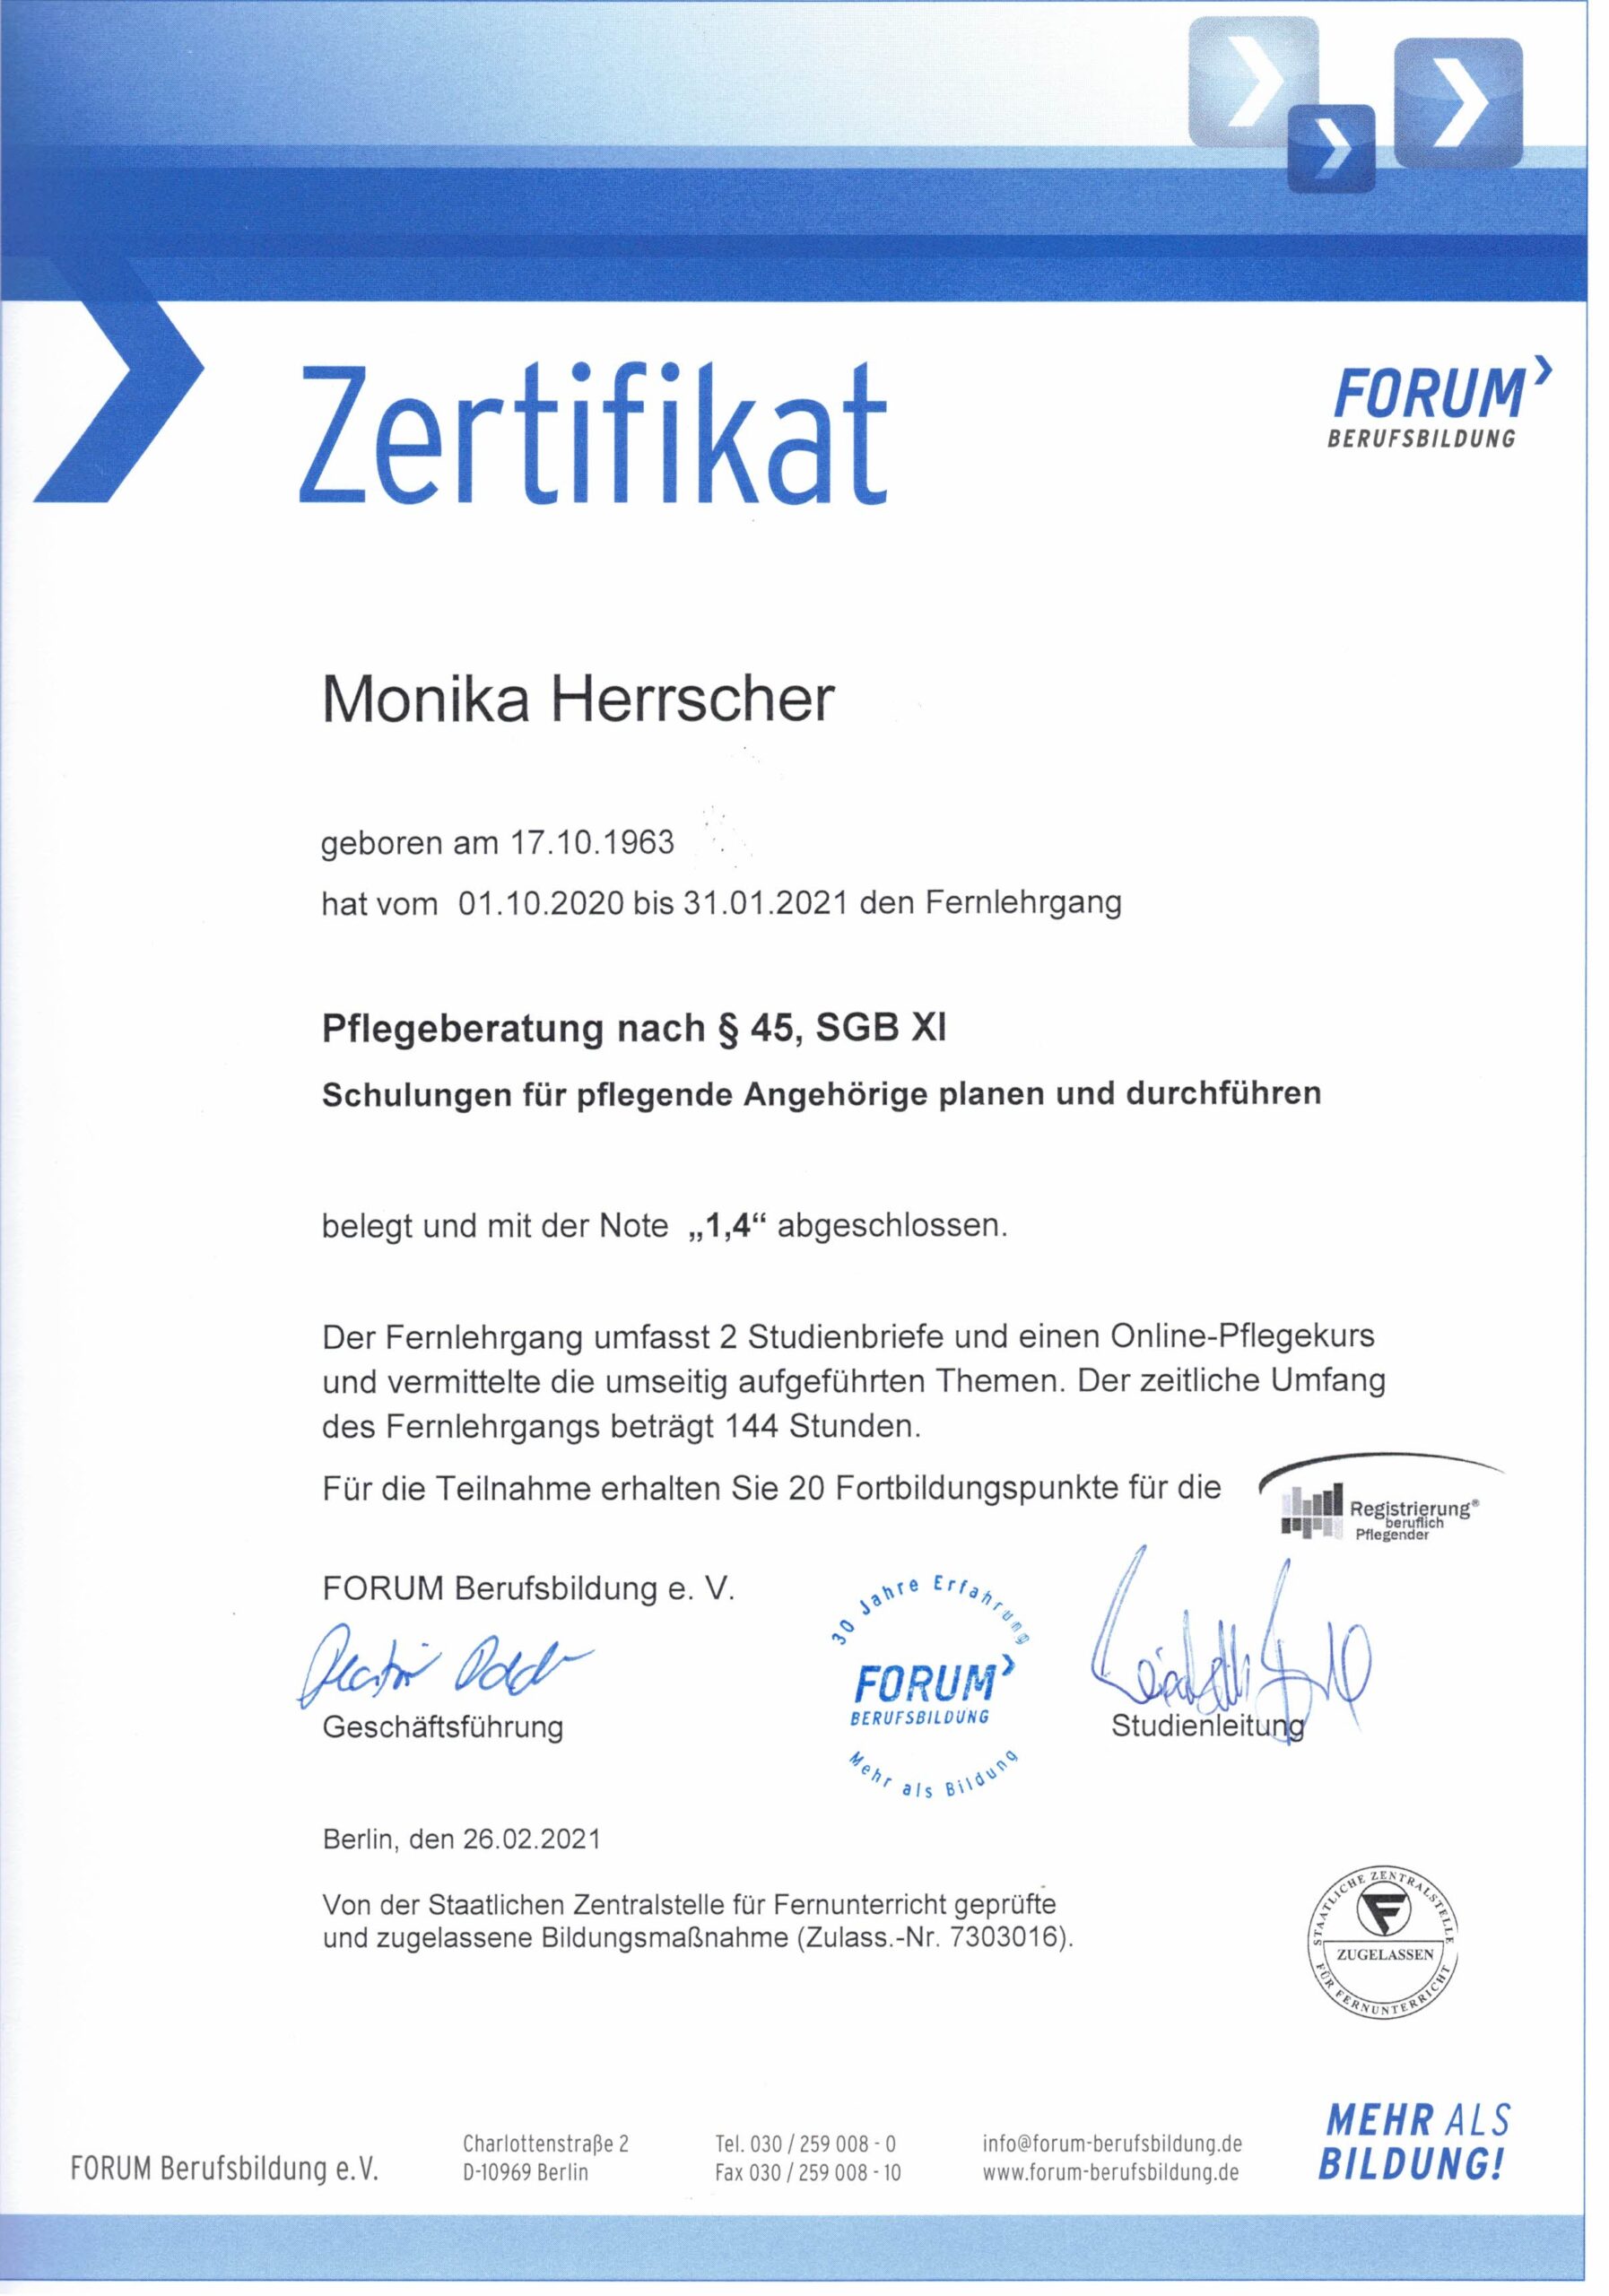 Zertifikat als Pflegeberaterin von Monika Herrscher